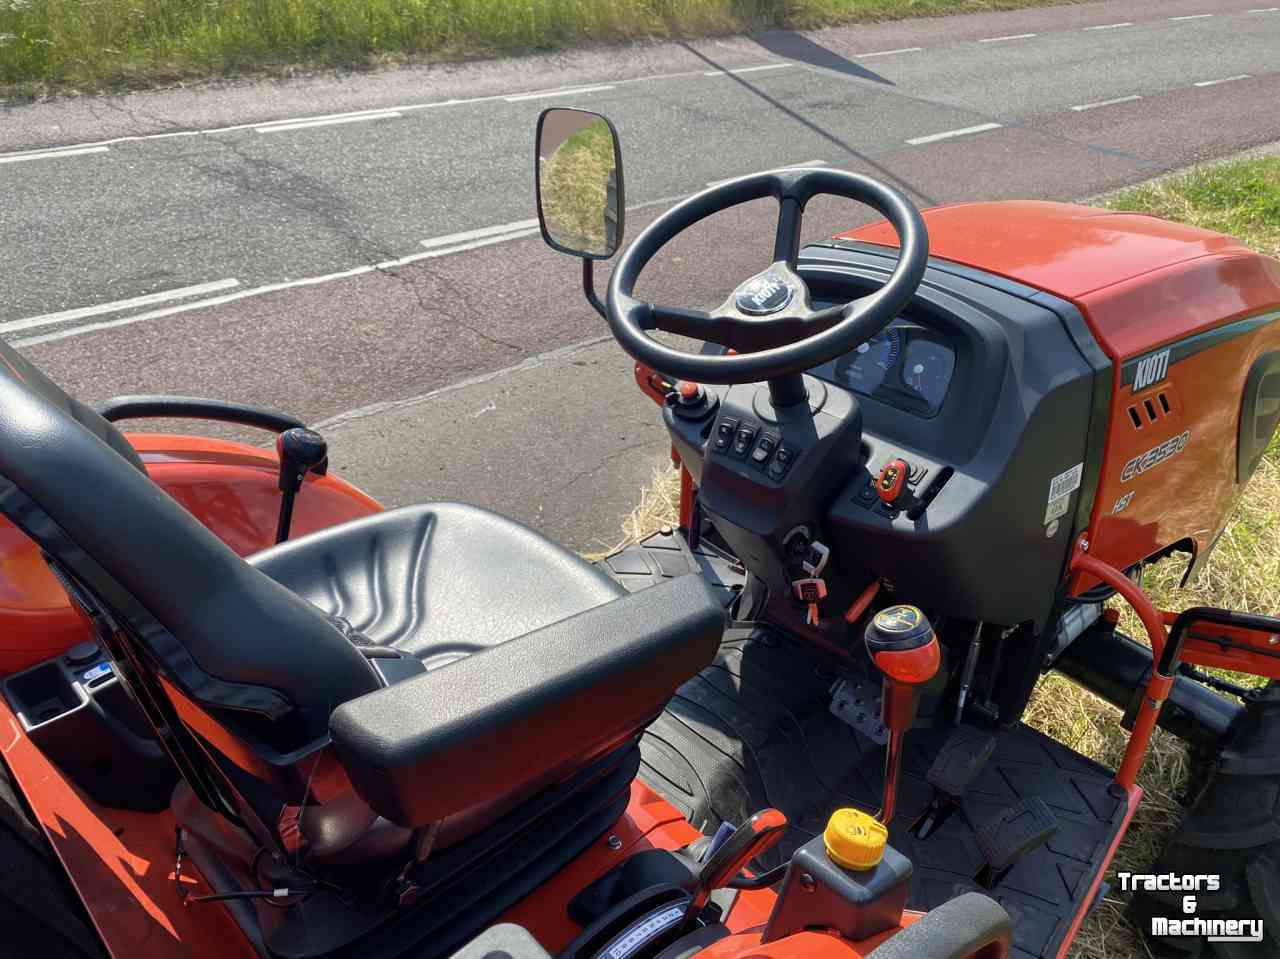 Tracteur pour horticulture Kioti CK3530 HST